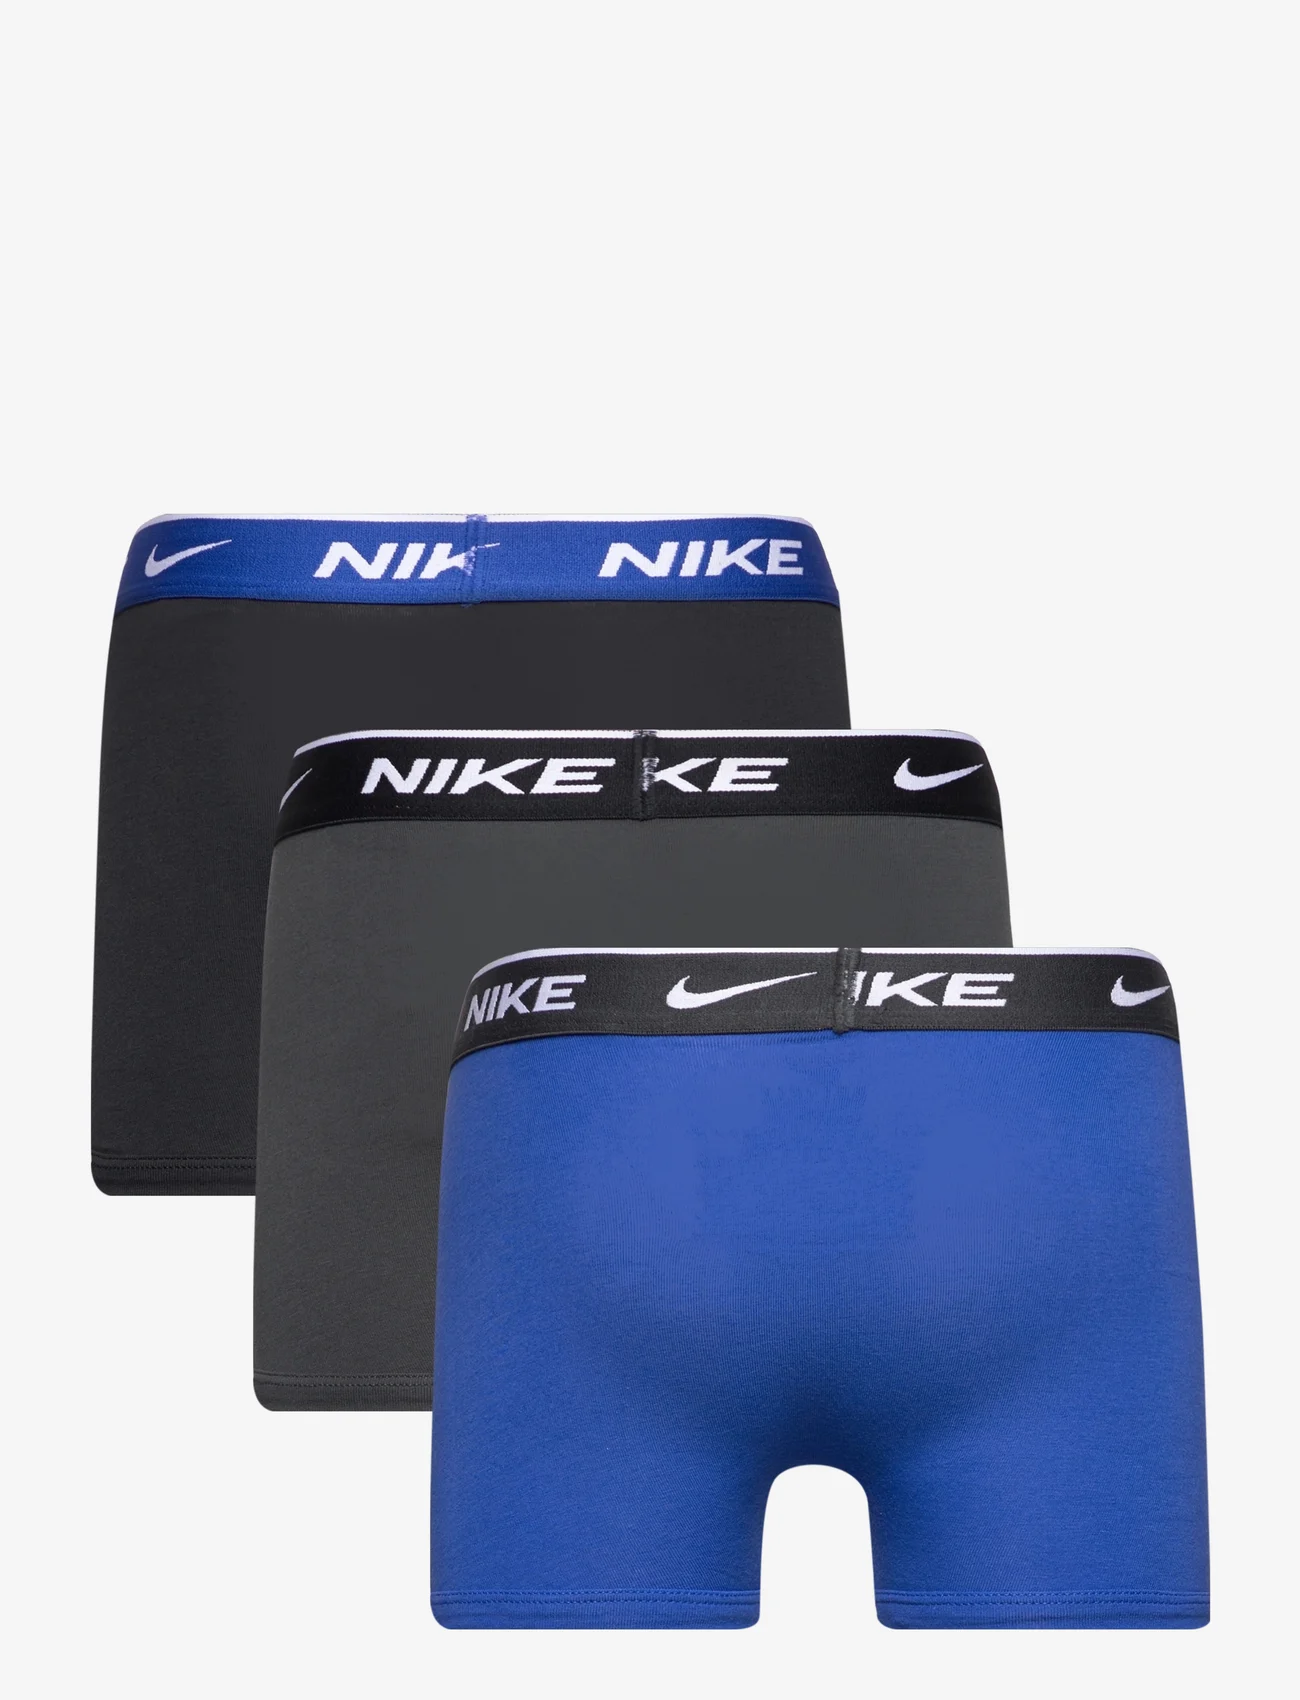 Nike - NHB NHB E DAY COTTON STRETCH 3 / NHB NHB E DAY COTTON STRETC - underpants - game royal - 1